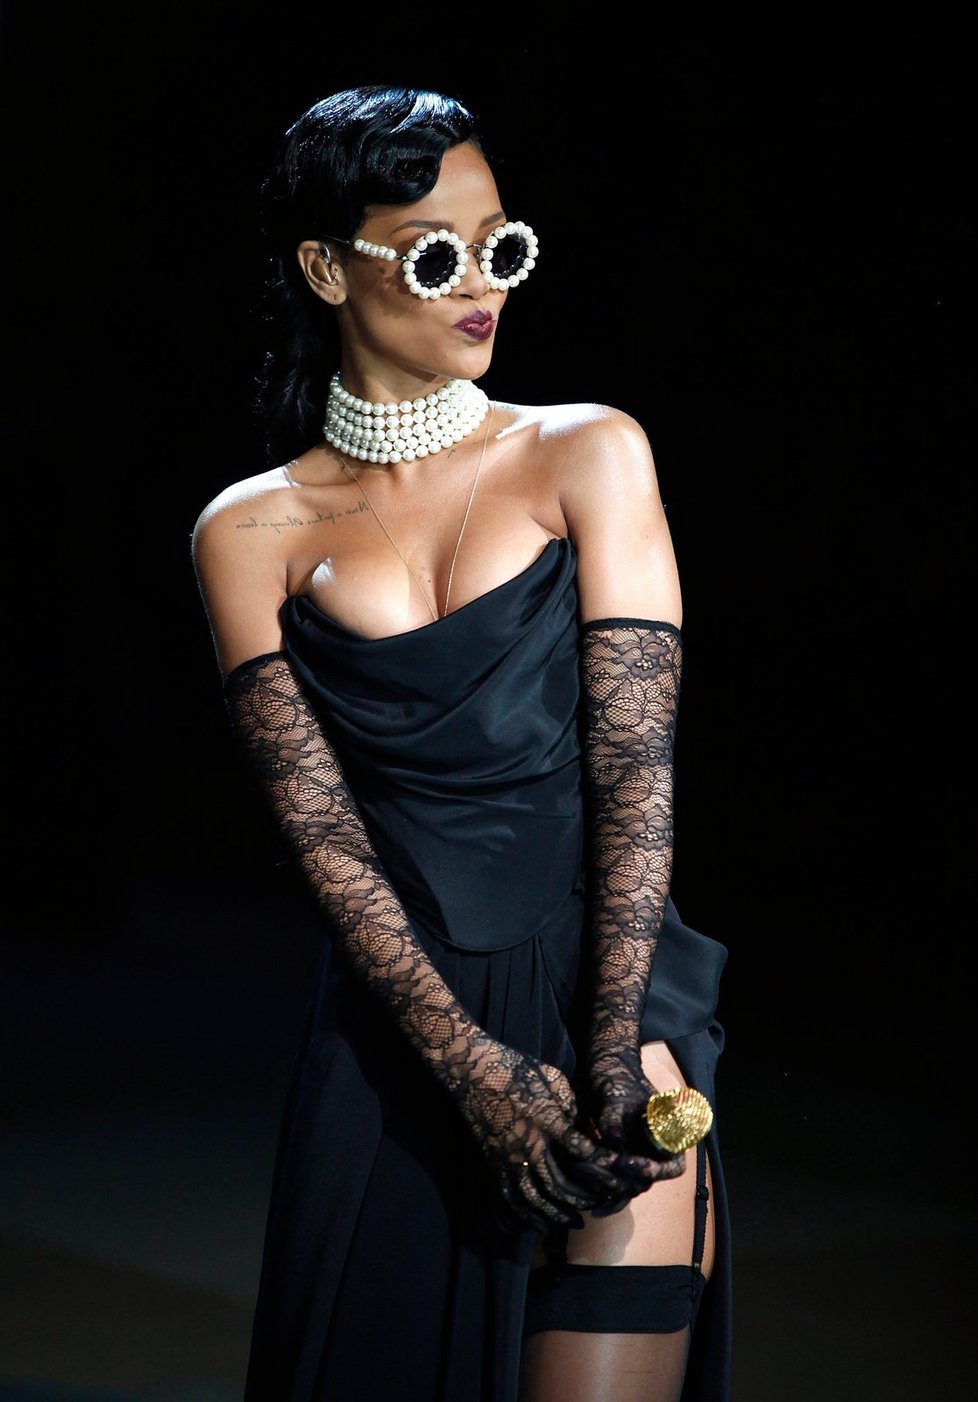 Čokoládová kráska z Barbadosu Rihanna překvapila publikum svými &#34;nemravnými&#34; kostými.